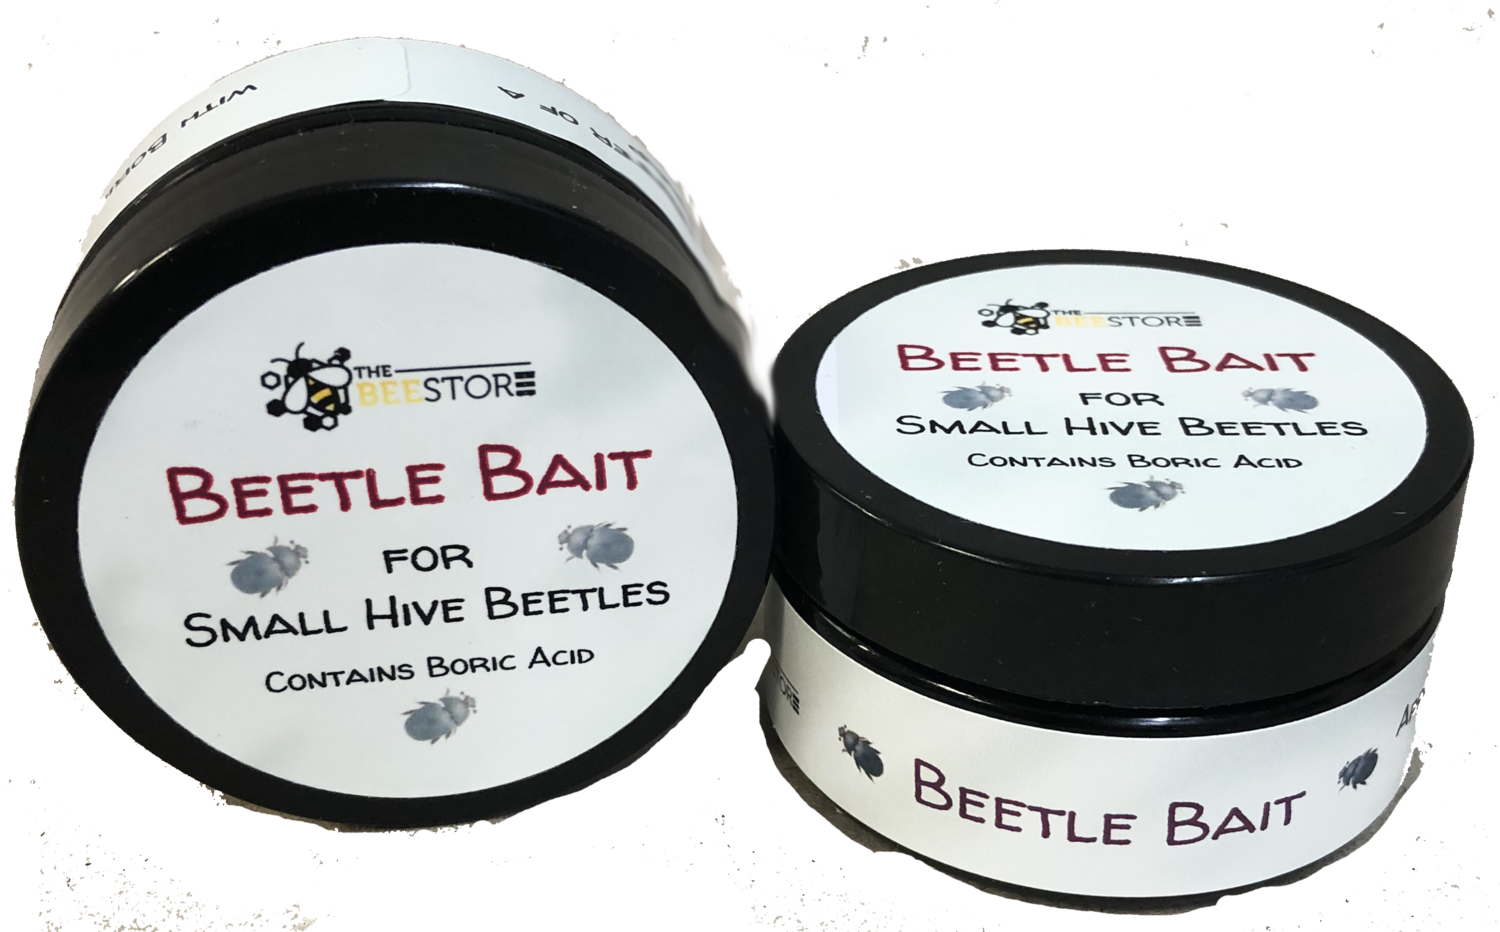 Beetle Bait